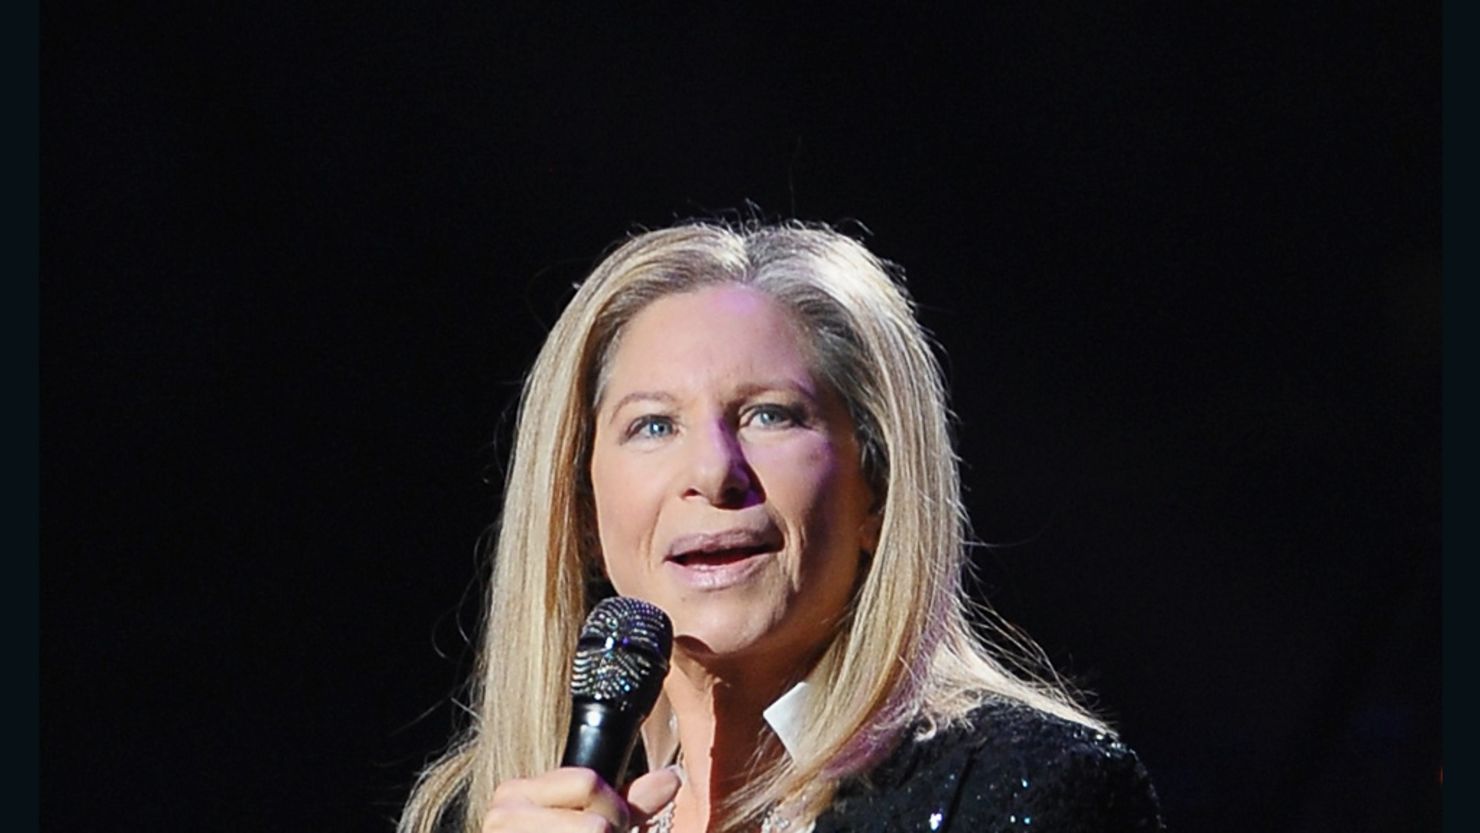 Barbra Streisand performed in Brooklyn on October 11.